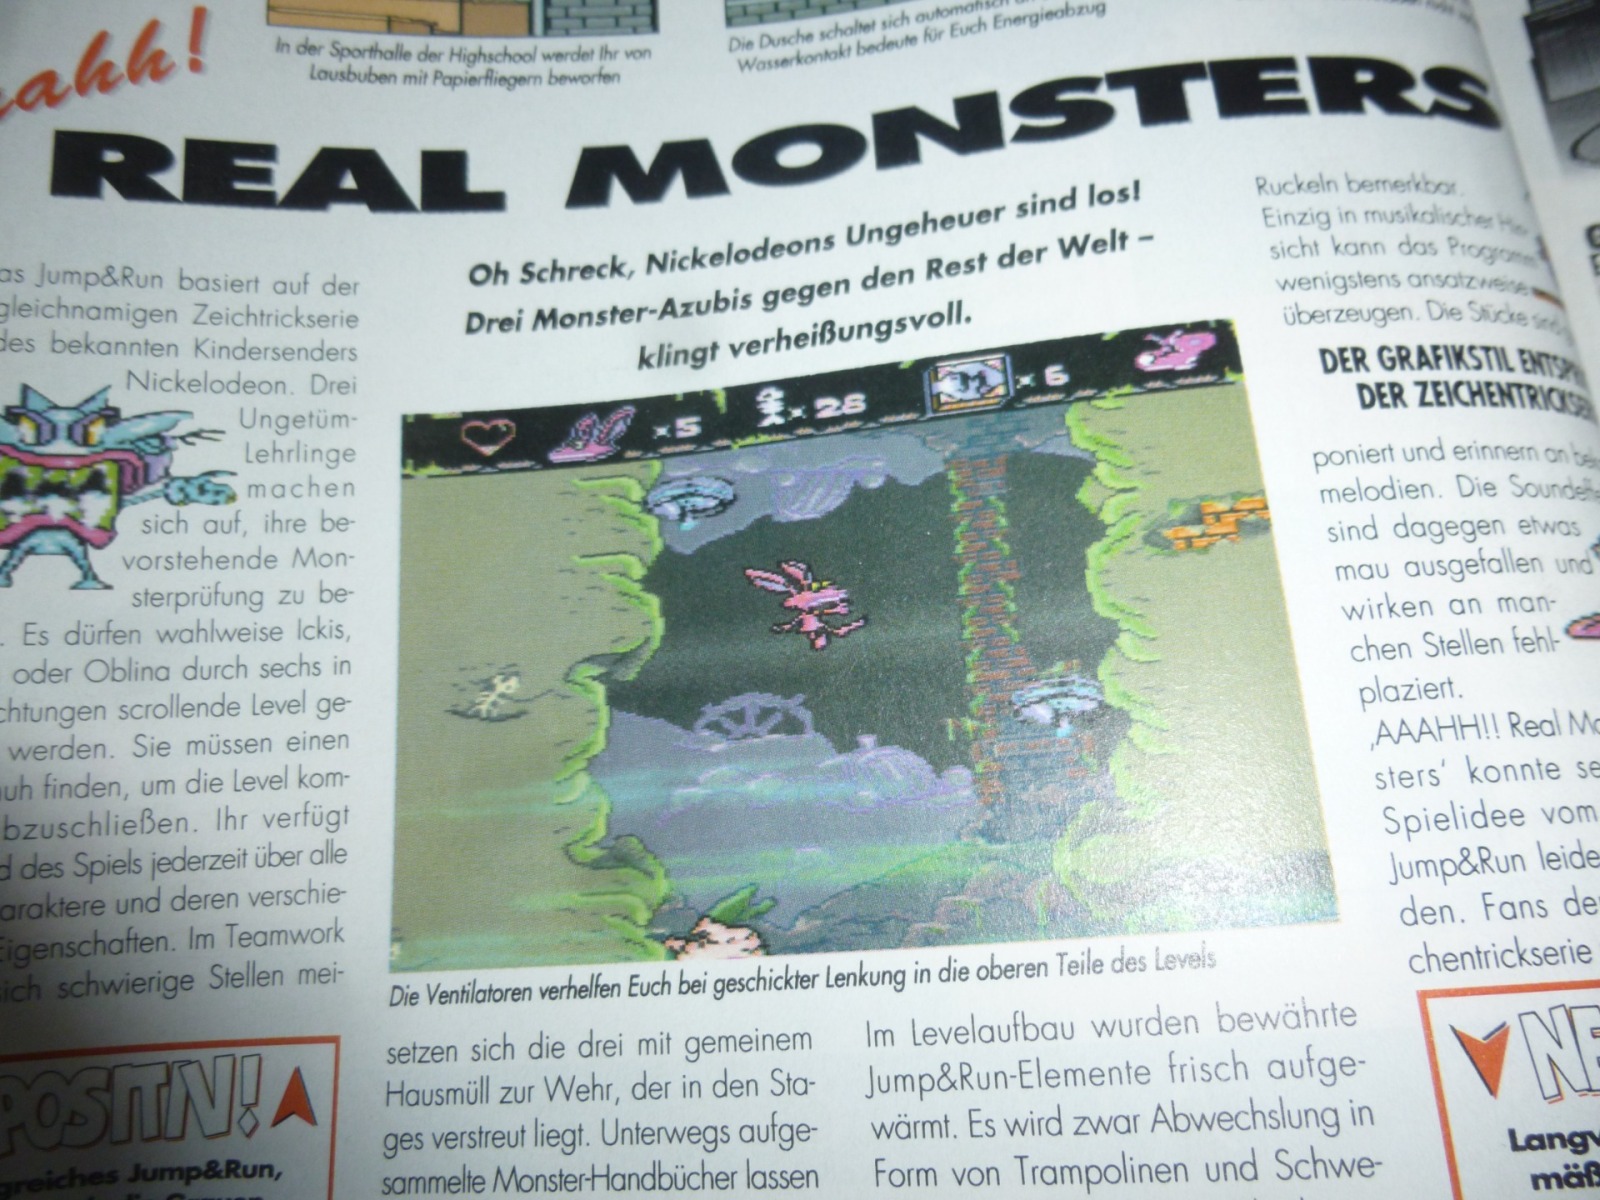 TOTAL Das unabhängige Magazin - 100 Nintendo - Ausgabe 3/96 1996 15